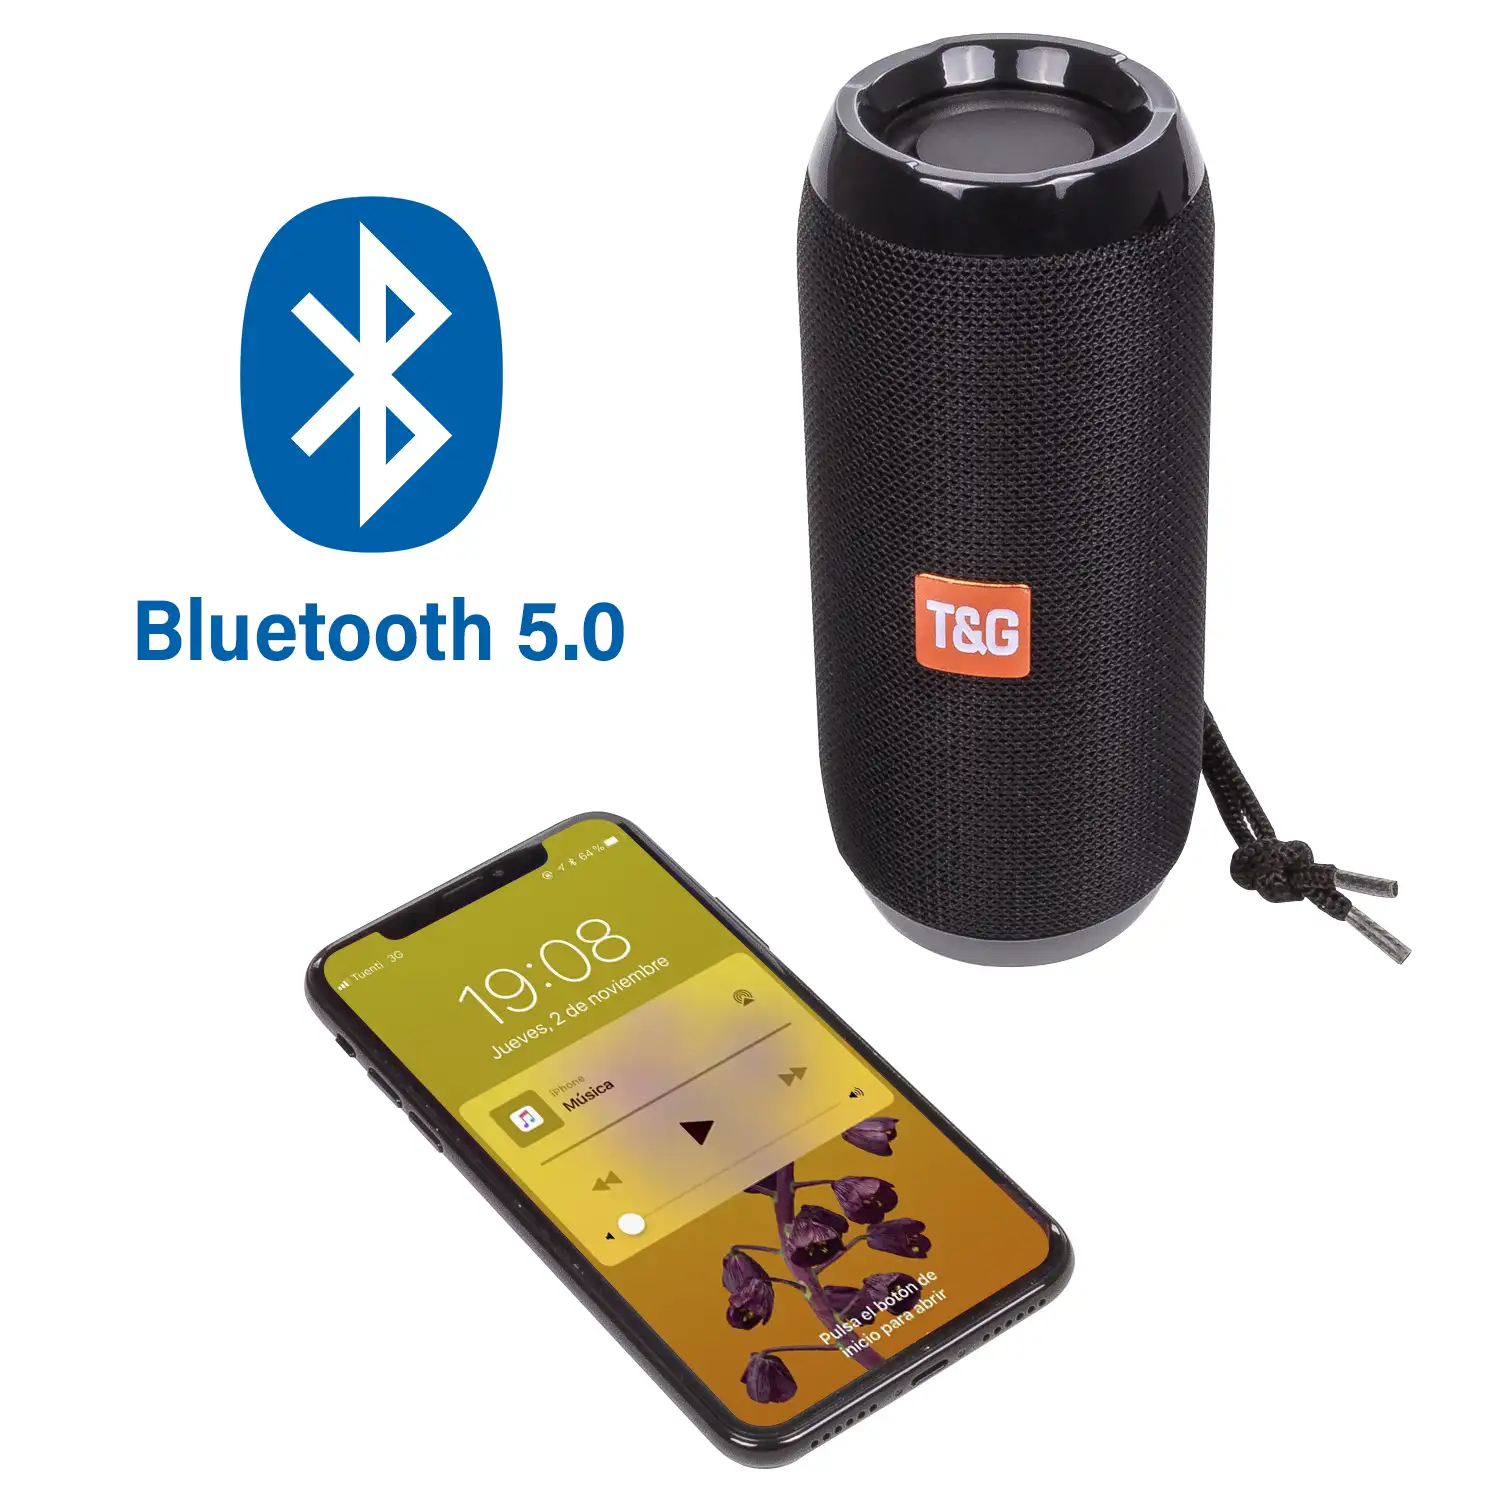 Altavoz TG-117 Bluetooth 5.0 portátil. Lector USB, micro SD, radio FM y manos libres. Entrada auxiliar jack 3,5mm.